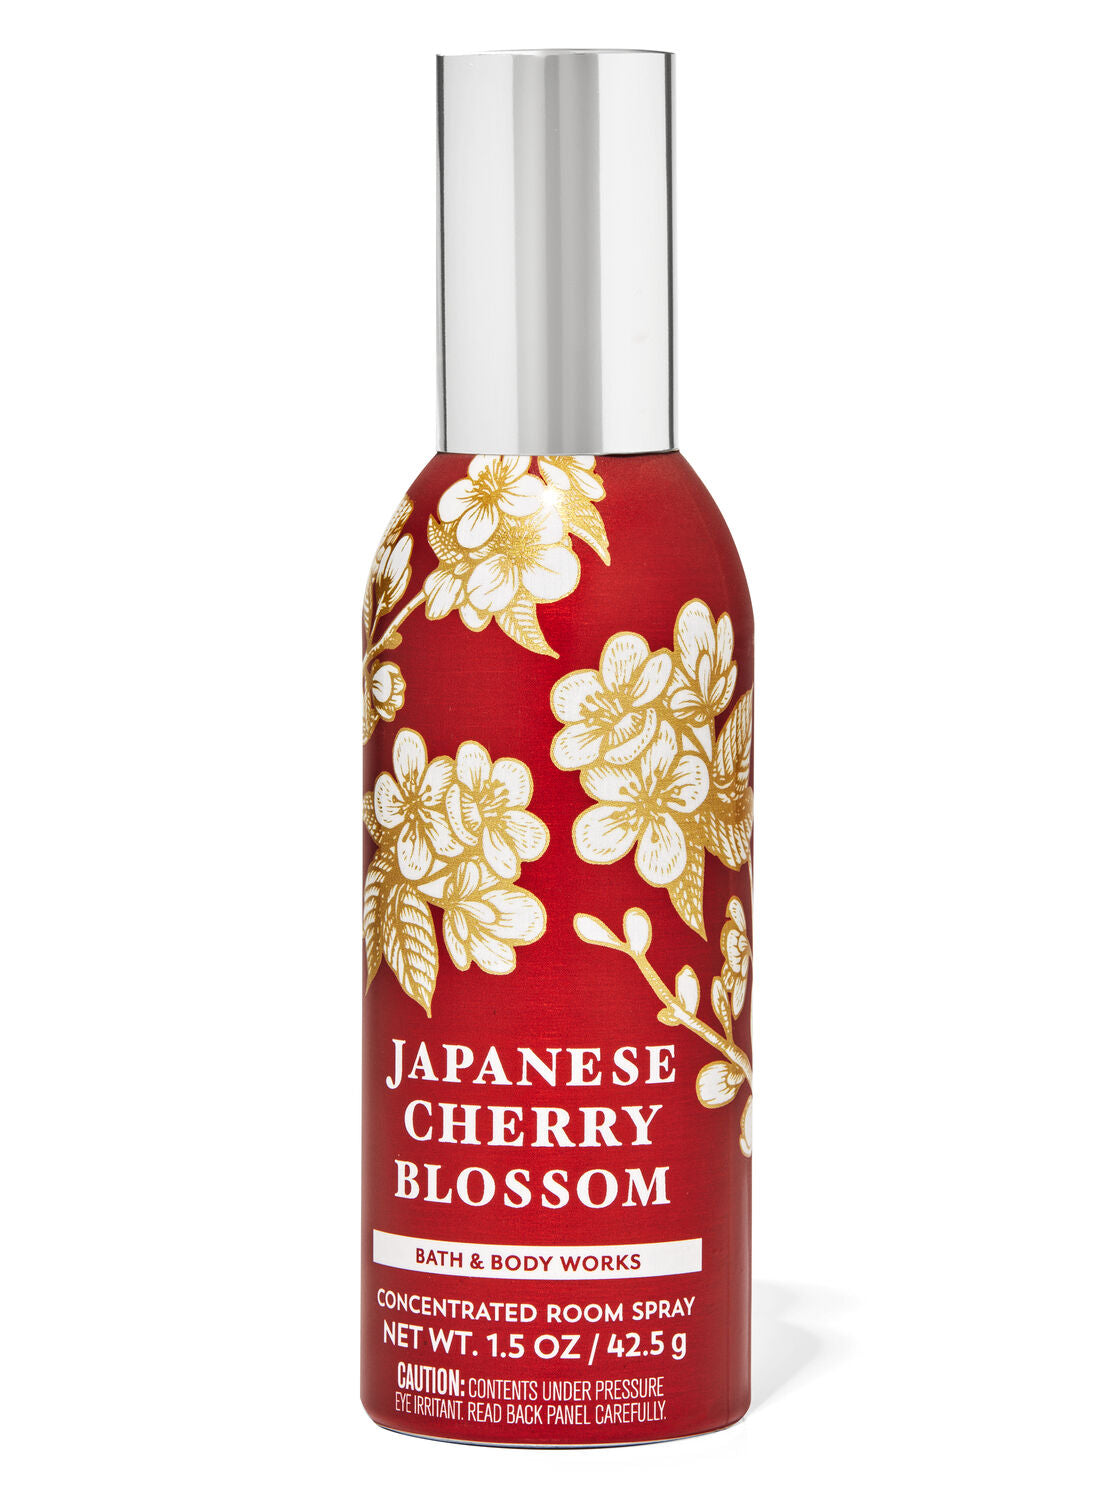 Bath & Body Works Japanese Cherry Blossom 42.5G Room Spray